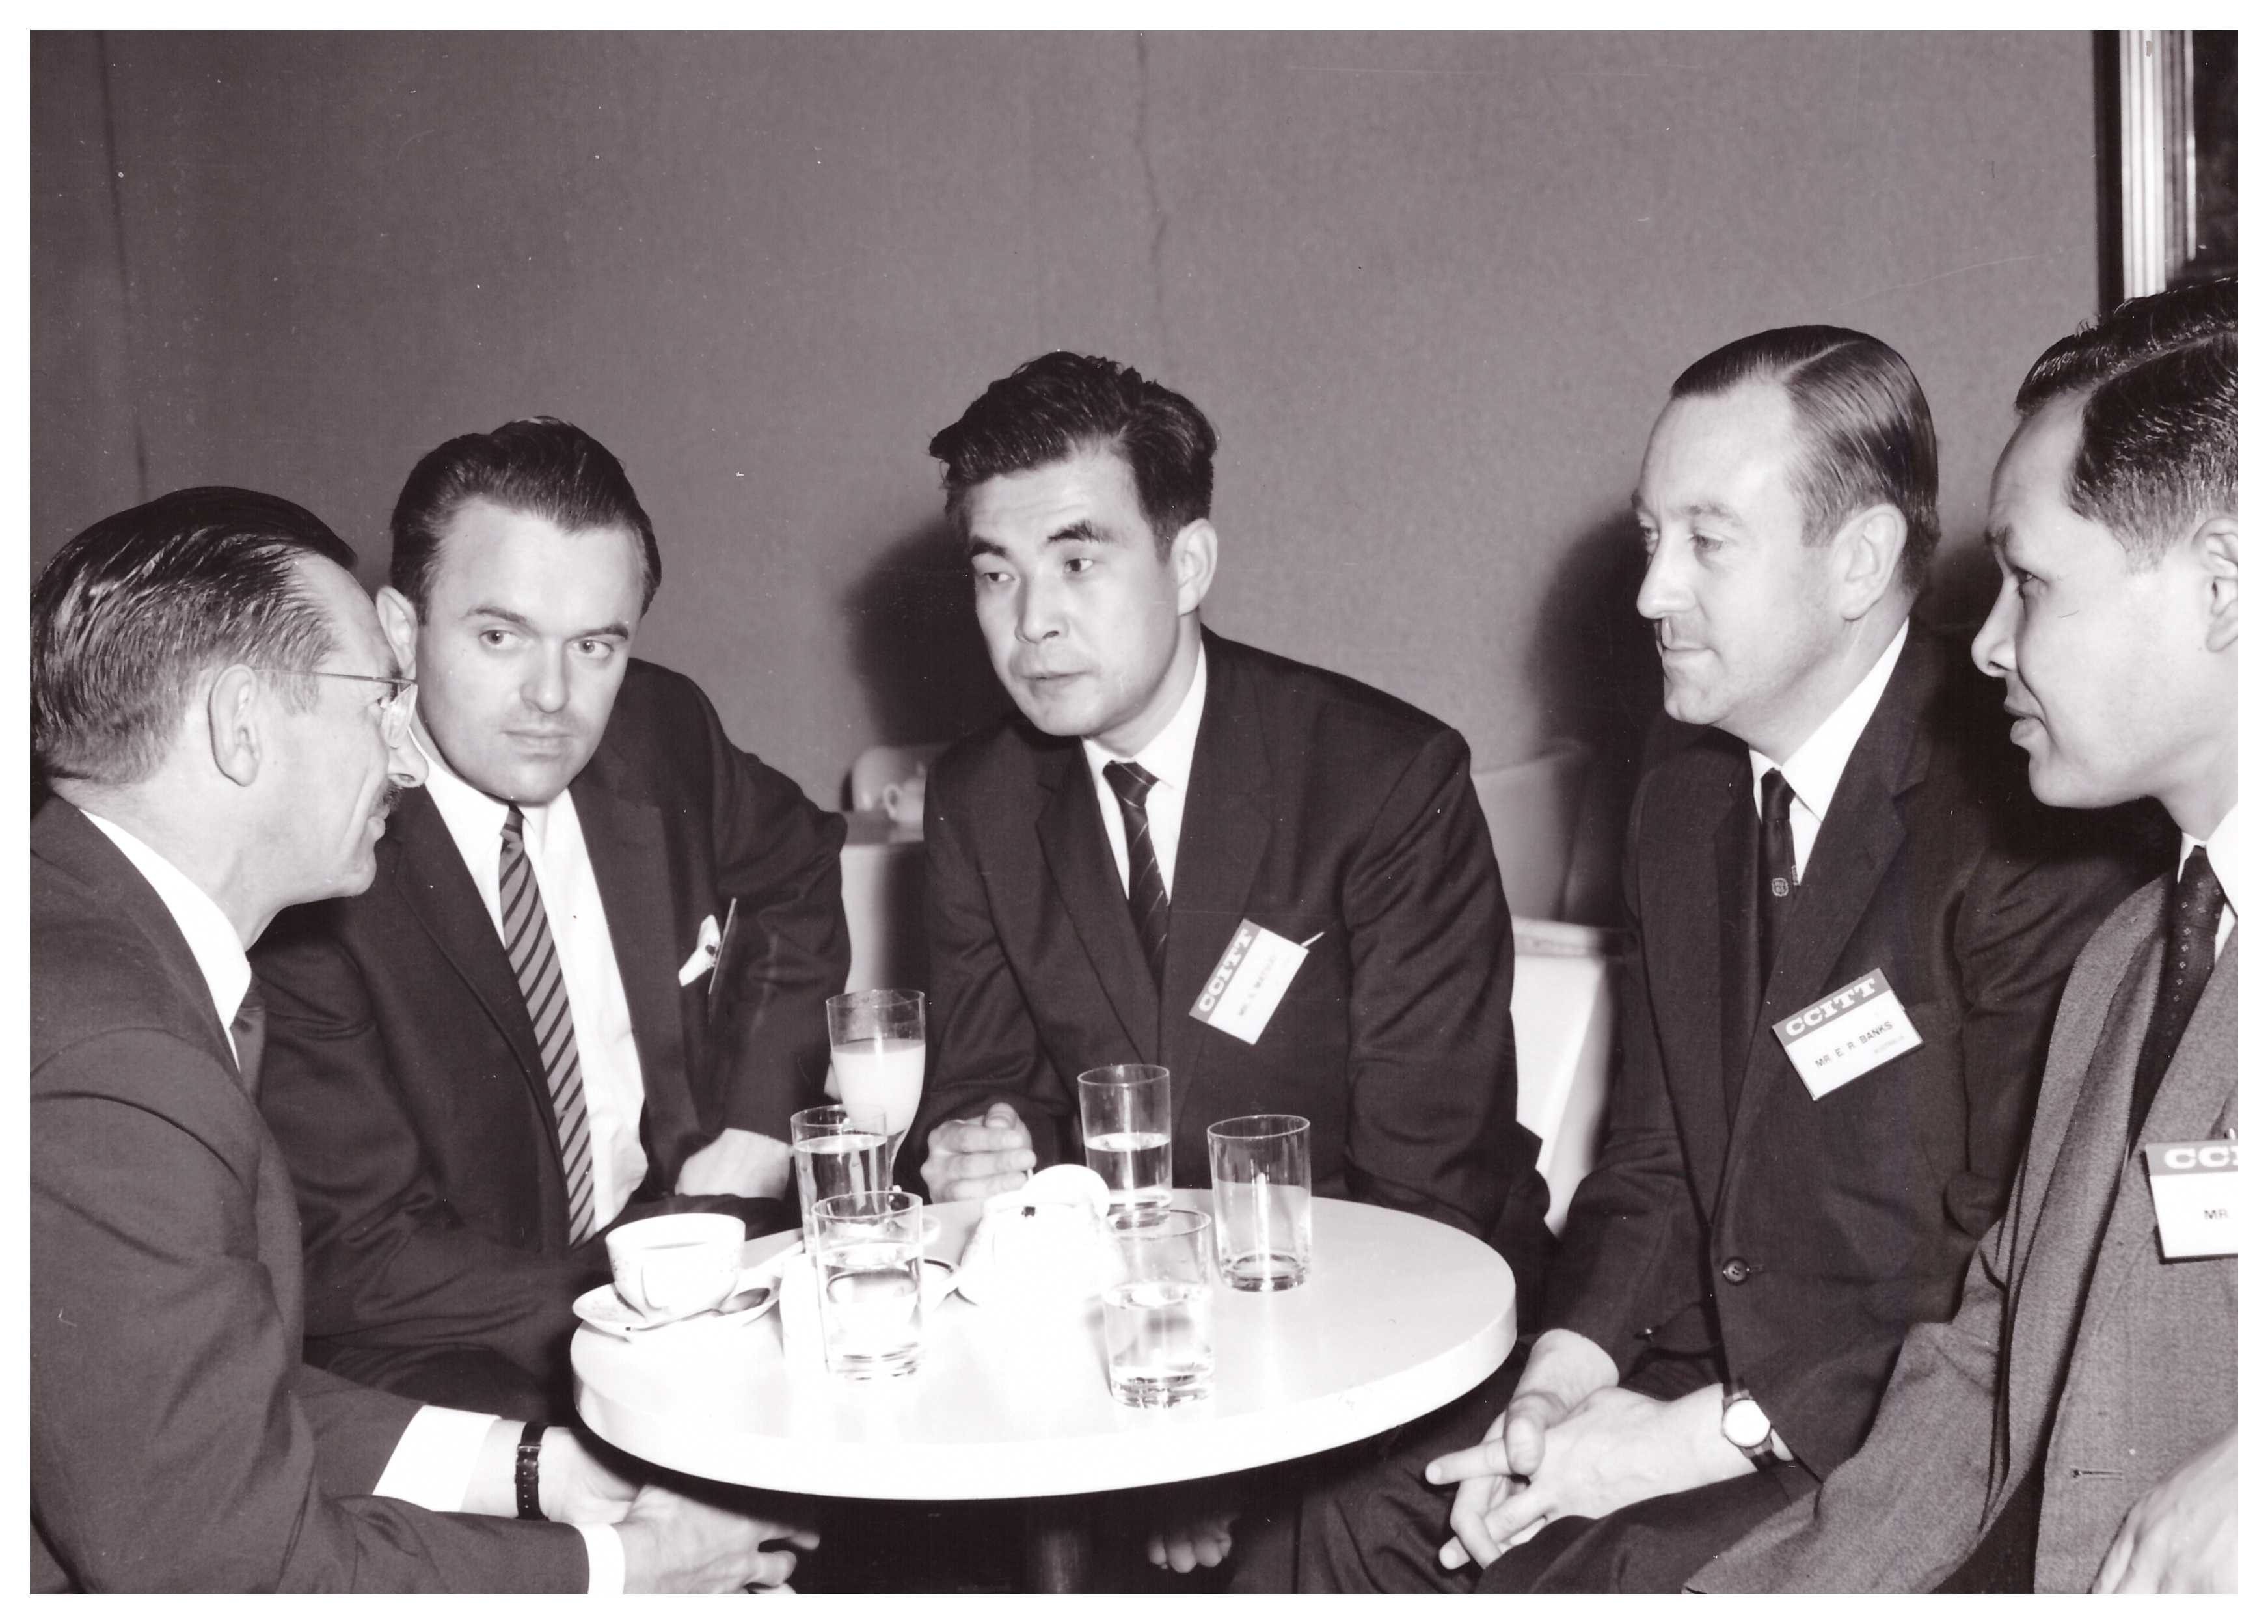 Chairing CCITT group meeting, Tokyo 1967